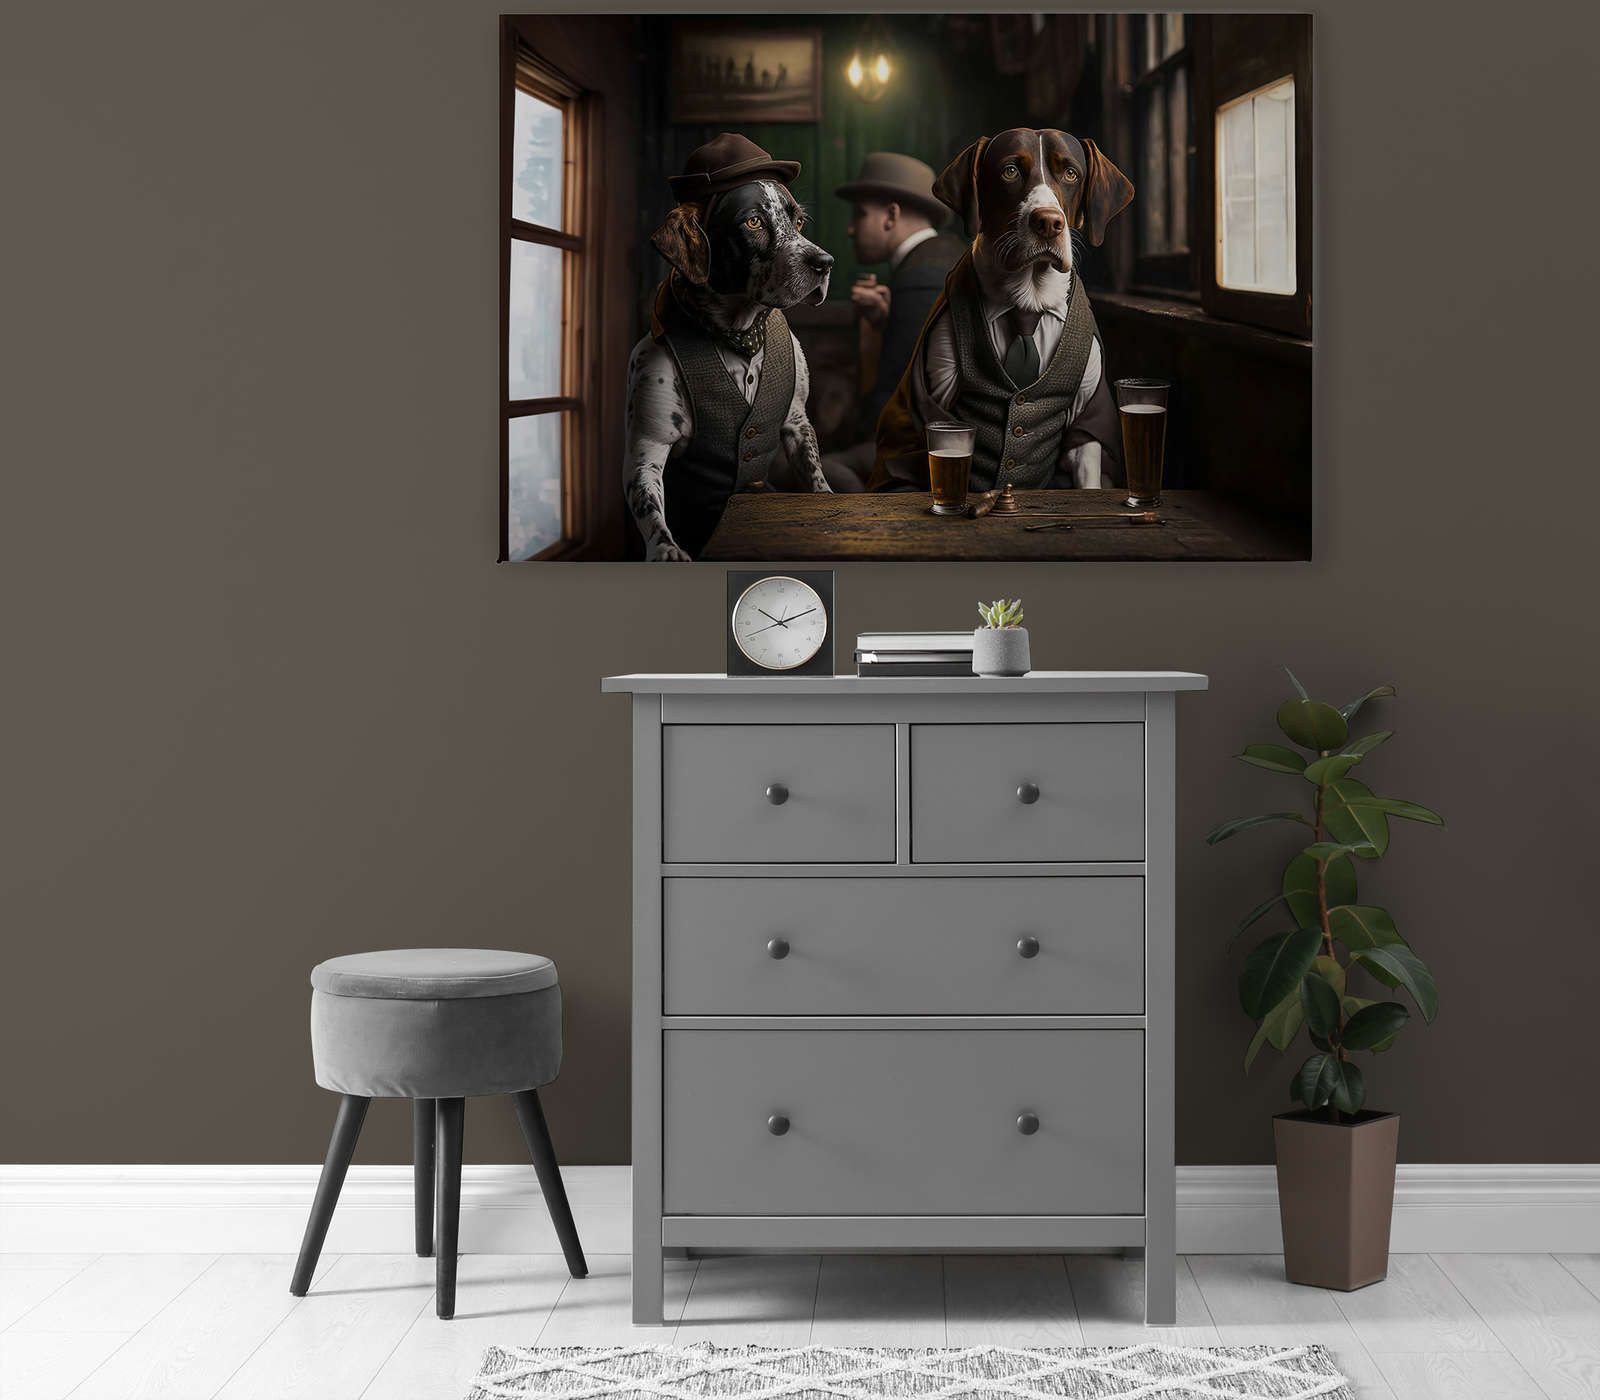             KI Canvas schilderij »Doggy Bar« - 120 cm x 80 cm
        